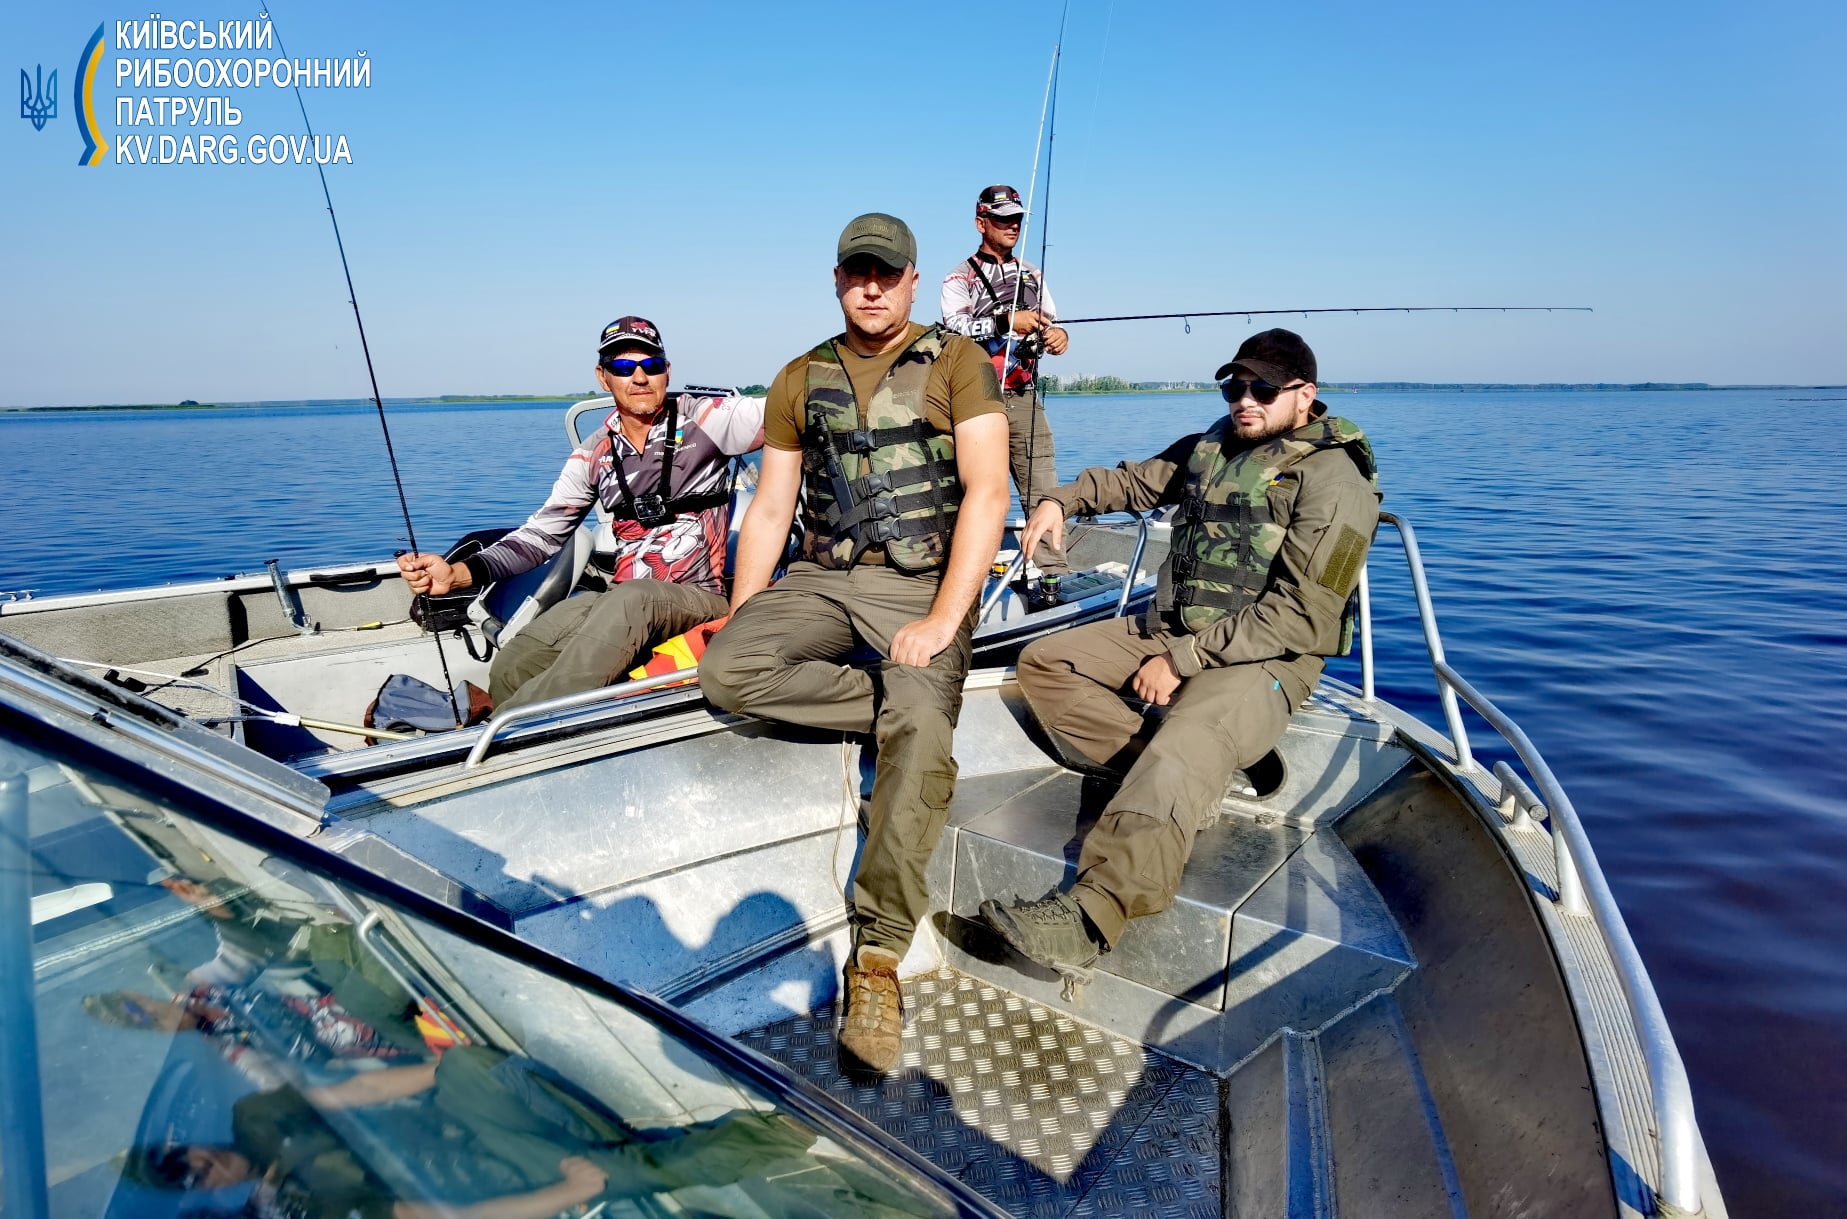 Киевский рыбоохранный патруль за полмесяца зафиксировал нанесение ущерба на 734 тыс. гривен и выписал штрафов нарушителям на 3 тыс. гривен